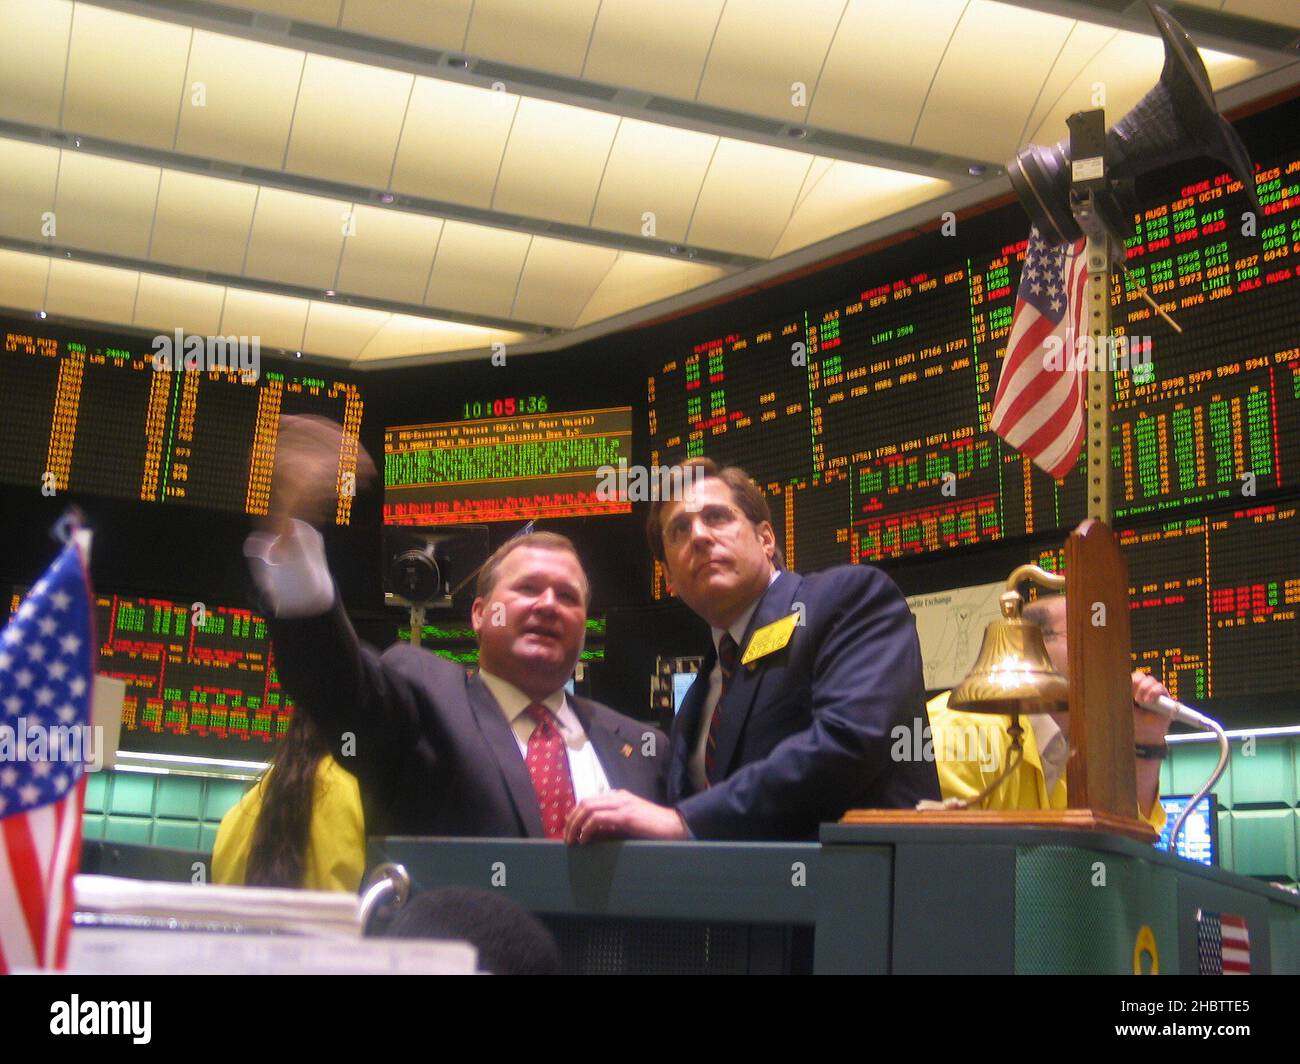 Der Kongressabgeordnete Steve Rothman läutete die Eröffnungsglocke und begann mit dem Handel auf dem Boden der 132 Jahre alten New York Mercantile Exchange (NYMEX). Rothman wurde auf der Plattform von NYMEX-Präsident James Newsome unterstützt. Ca. 20. Juni 2005 Stockfoto